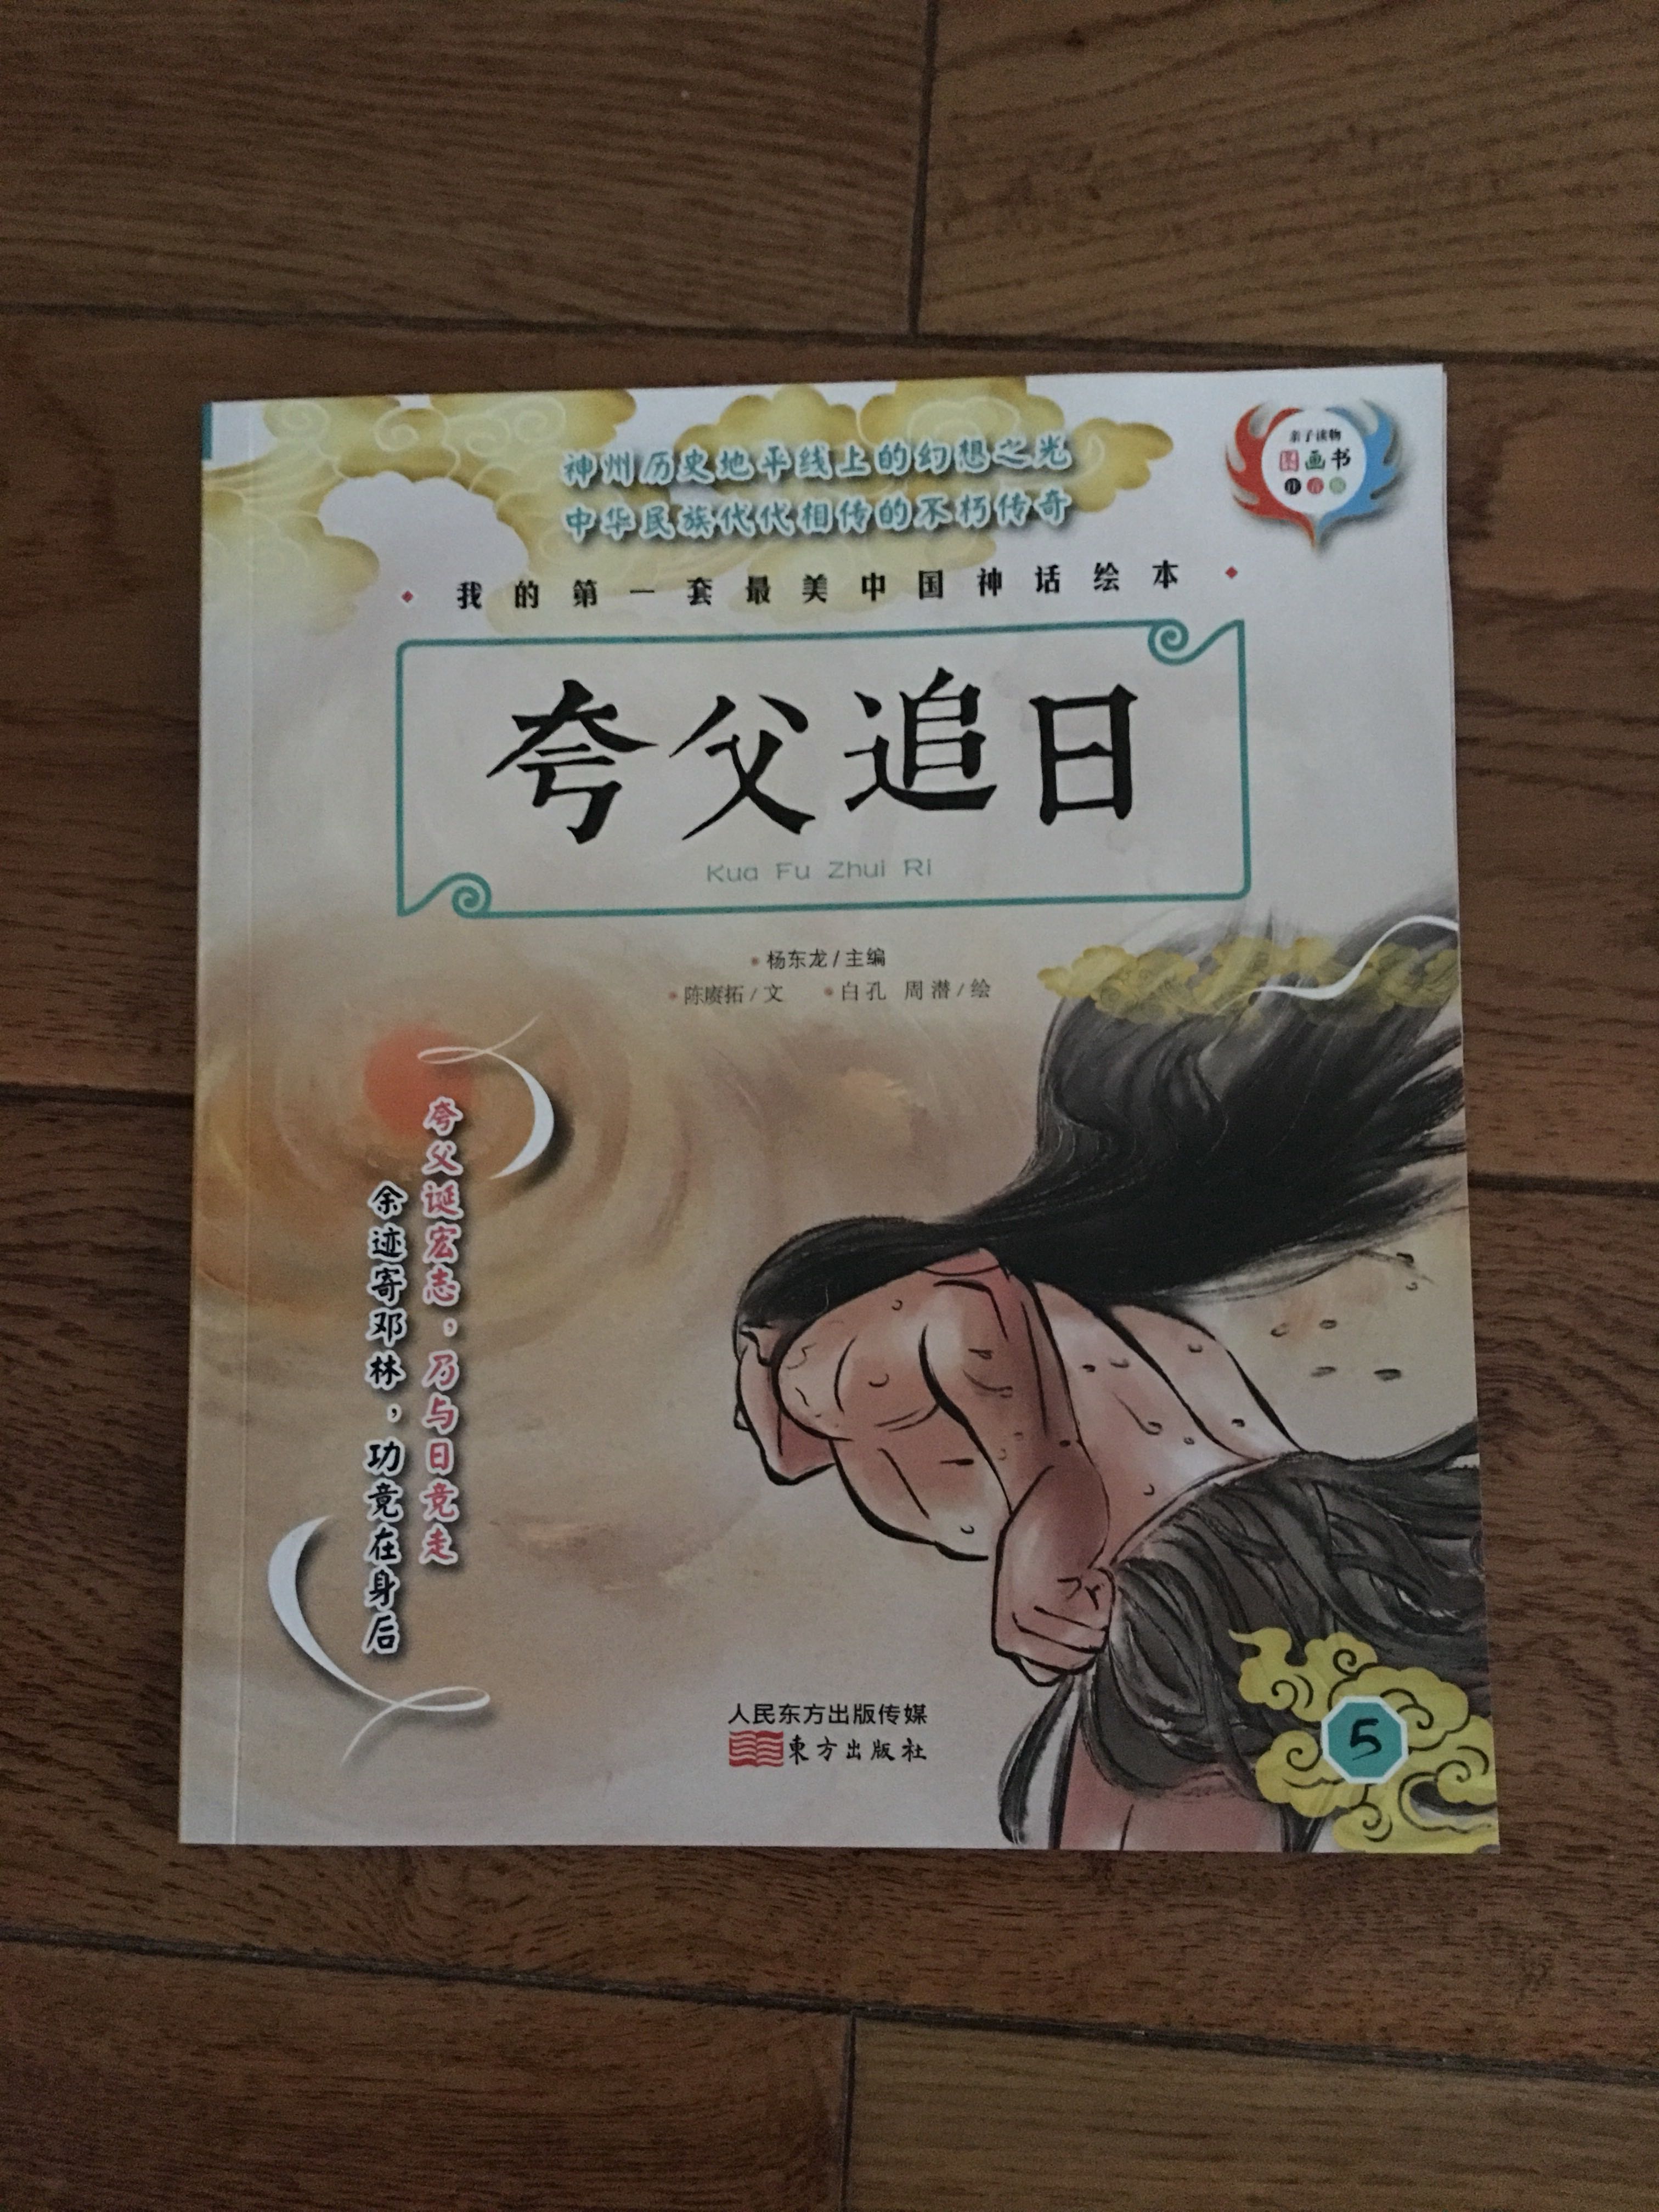 中华神话故事值得孩子们读一读，色彩很不错。